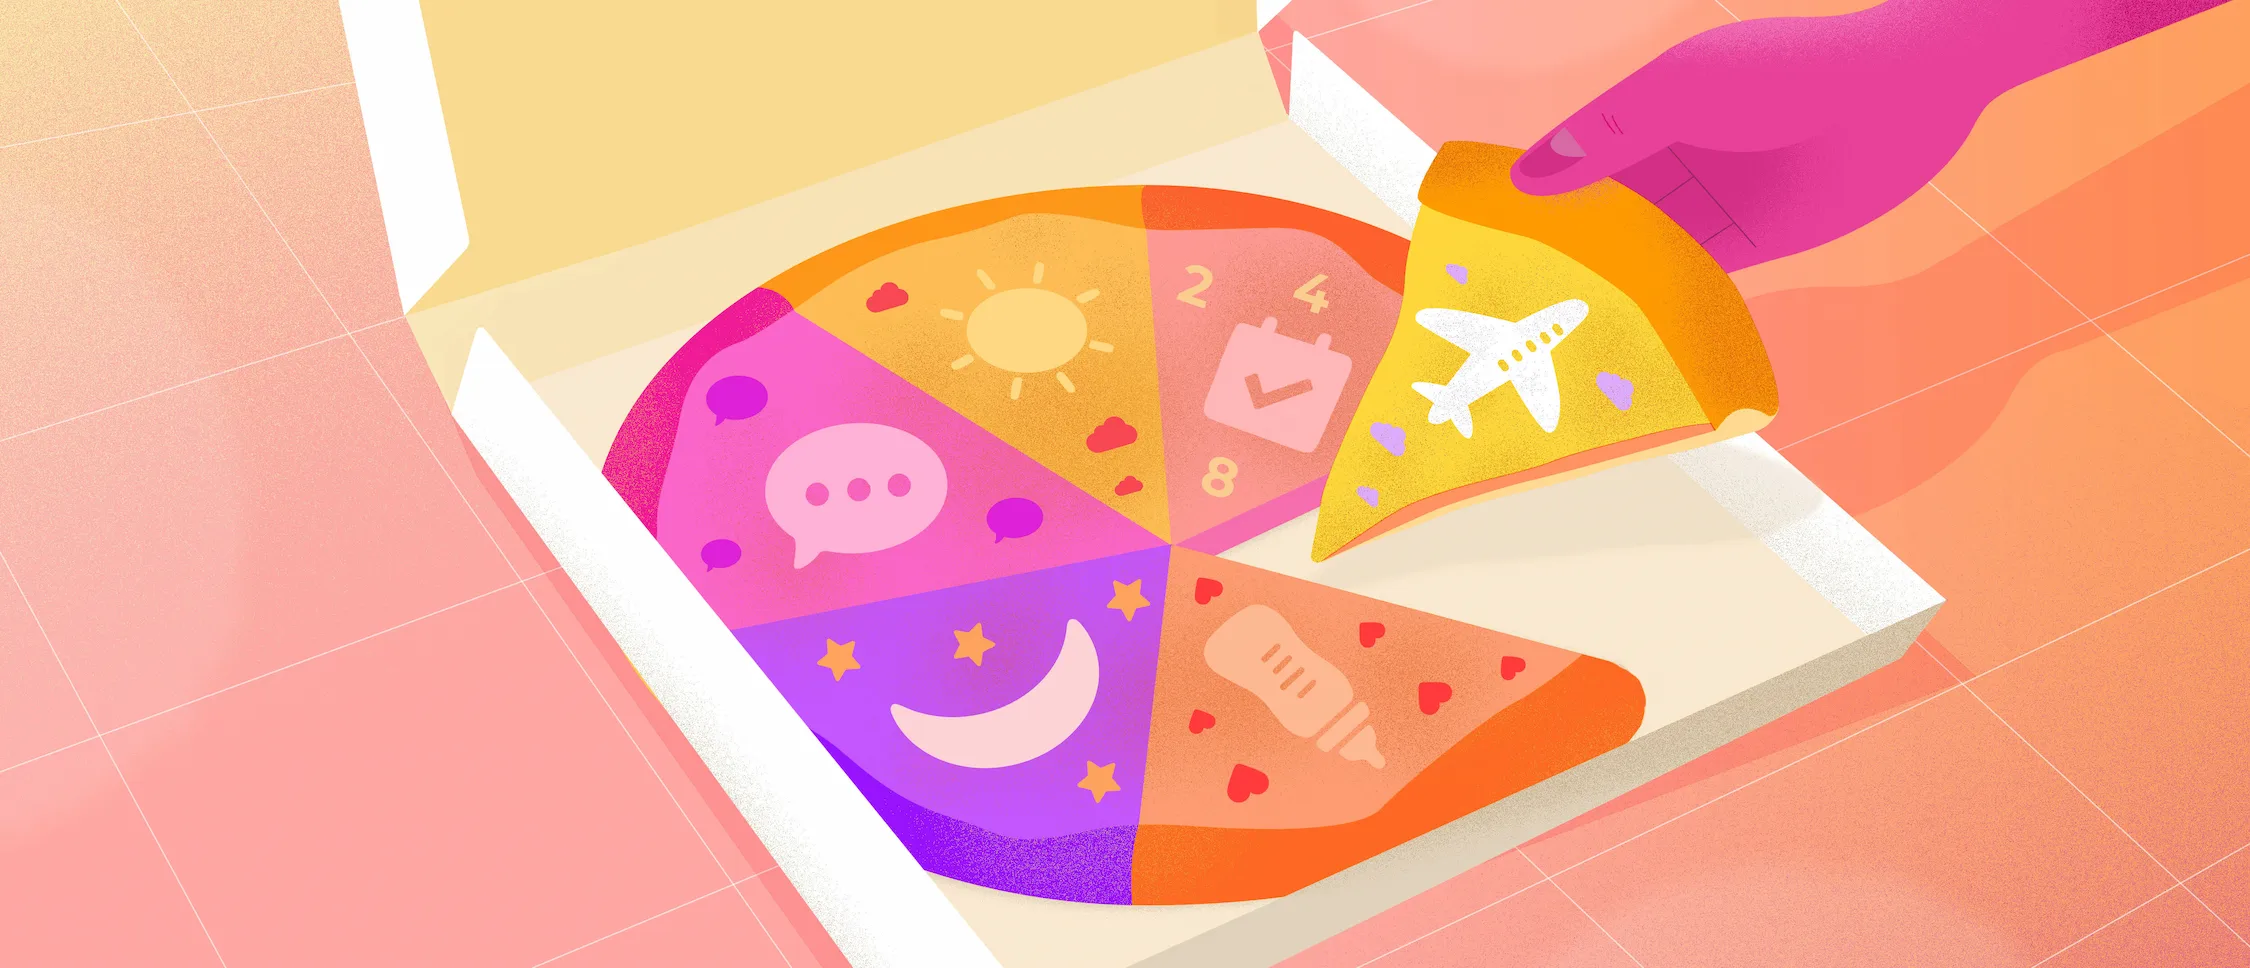 Pizza dans une boite dont la garniture est composée d'un avion, d'une bulle de texte, d'une lune, d'un biberon, d'un soleil, etc.